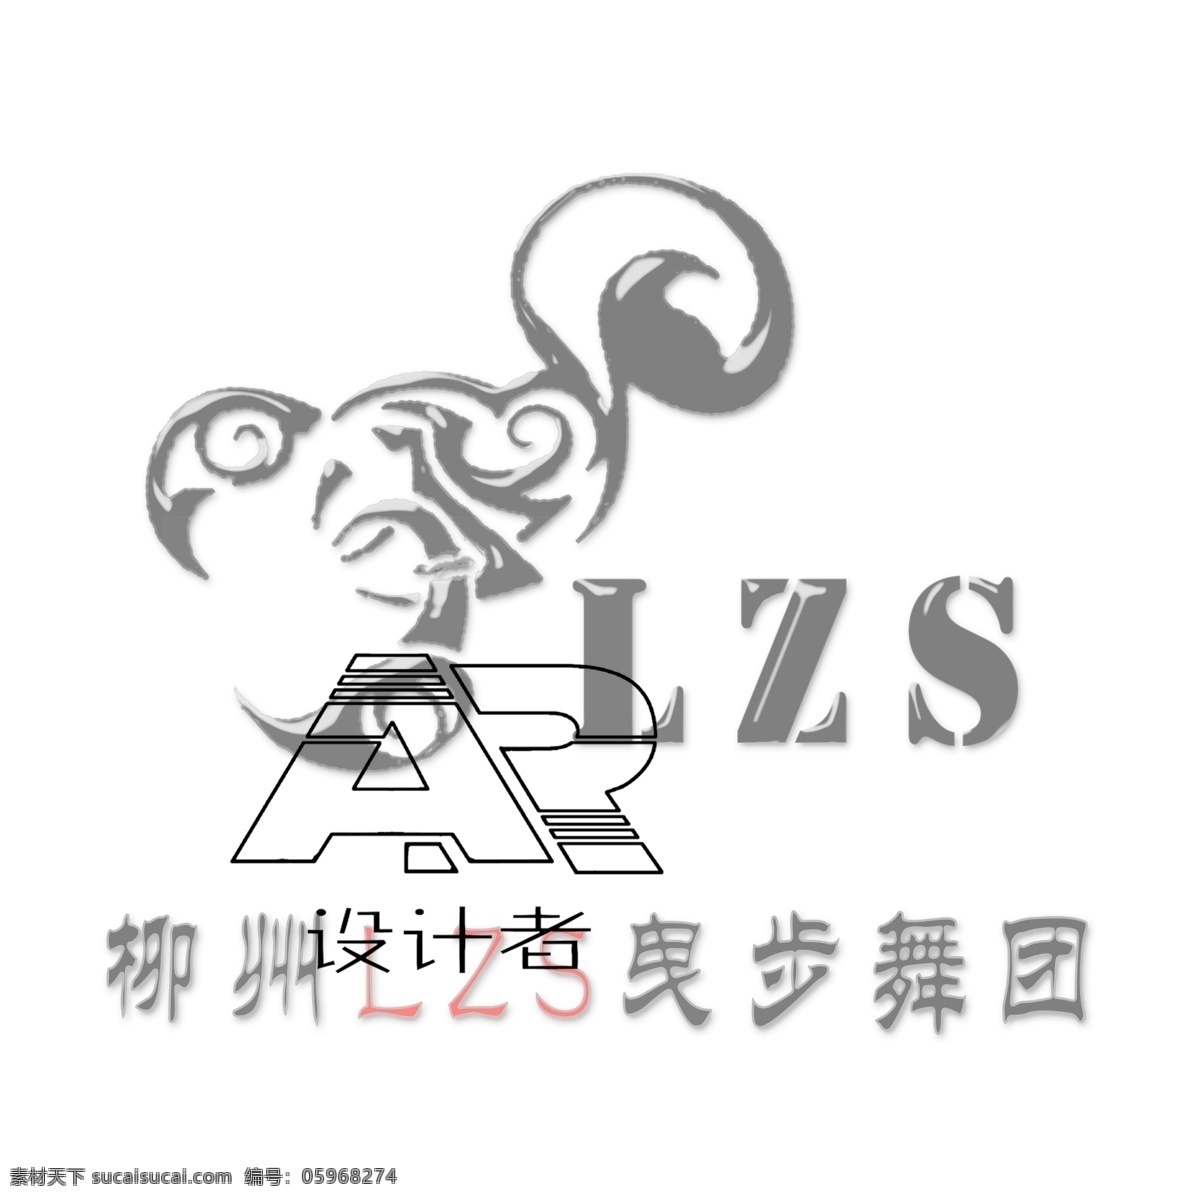 曳步舞 logo 鬼步舞 团徽 图标 头像 黑白设计 骷髅头 翅膀 宣传 效果图 分层